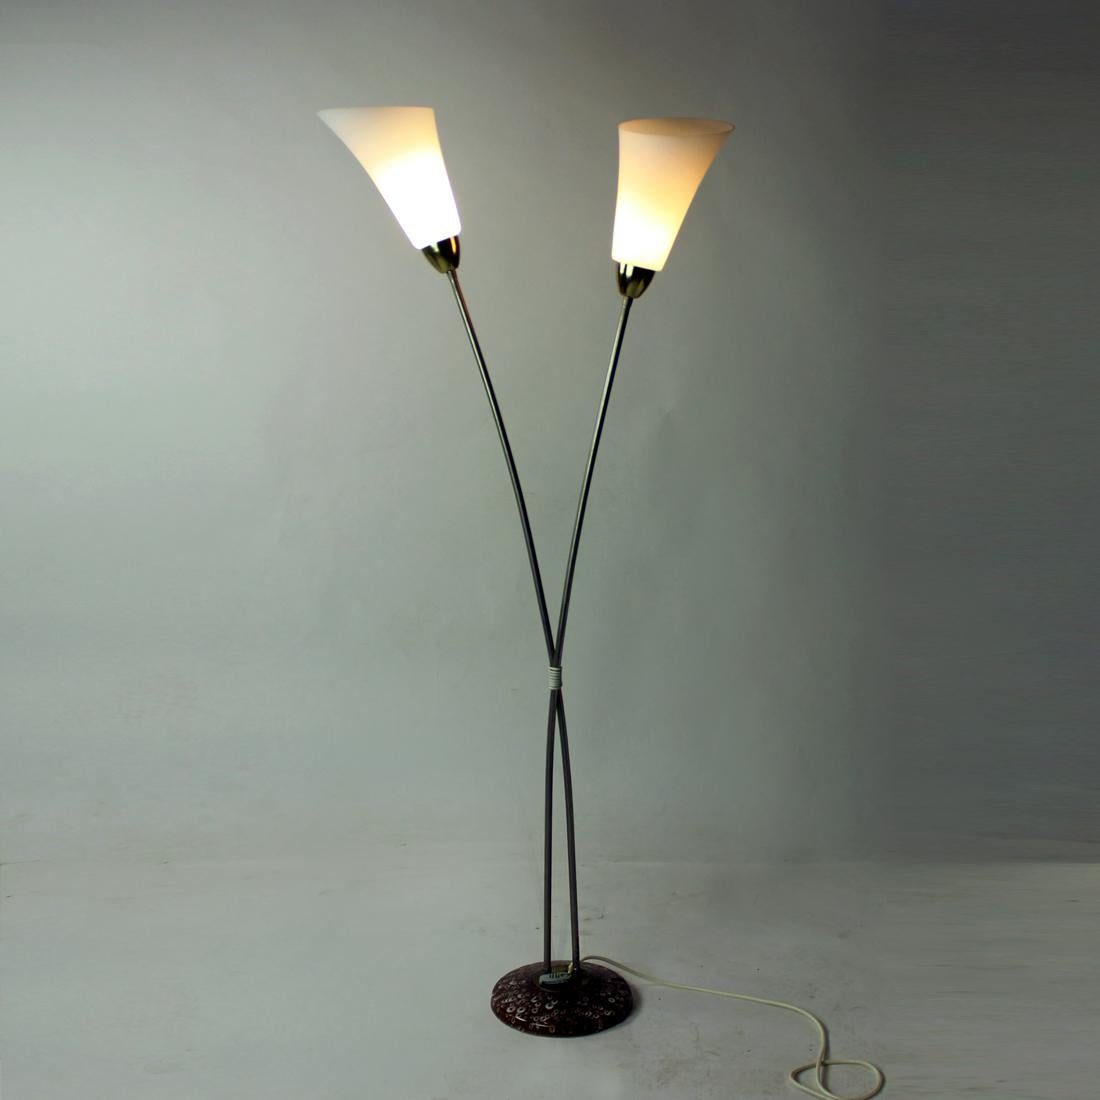 Superbe lampadaire emblématique produit en Tchécoslovaquie dans les années 1960 par la société Kamenicky Senov. La lampe repose sur un socle en céramique. Deux tiges métalliques, semblables à des tiges de fleurs s'élevant en hauteur, sont terminées